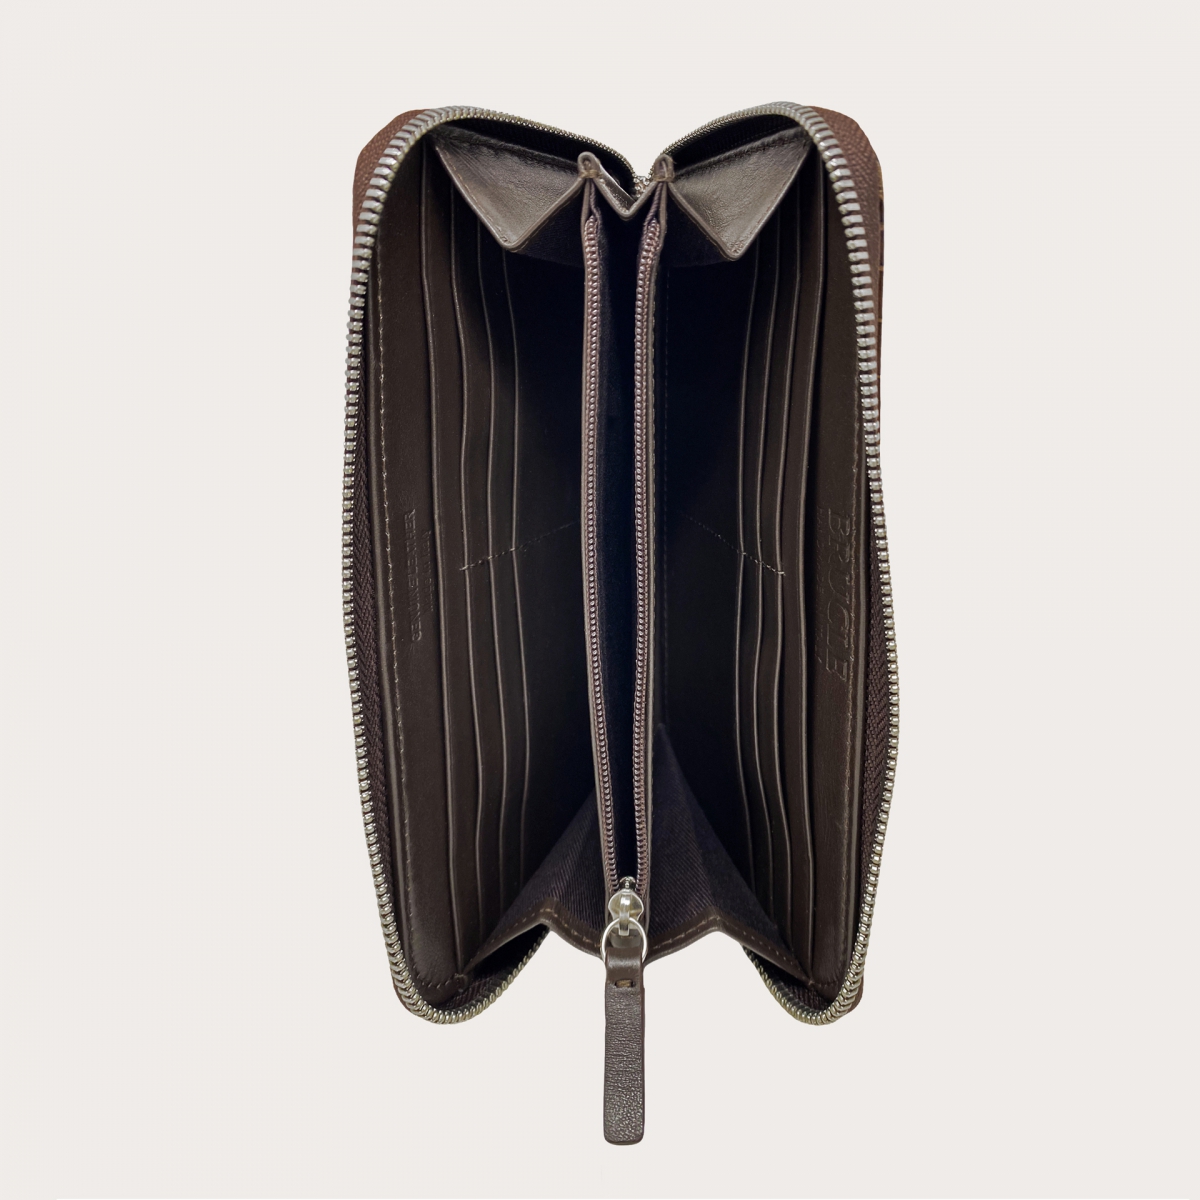 BRUCLE Elegante Damenportemonnaie mit Reißverschluss aus Leder mit Krokoprägung, dunkelbraun